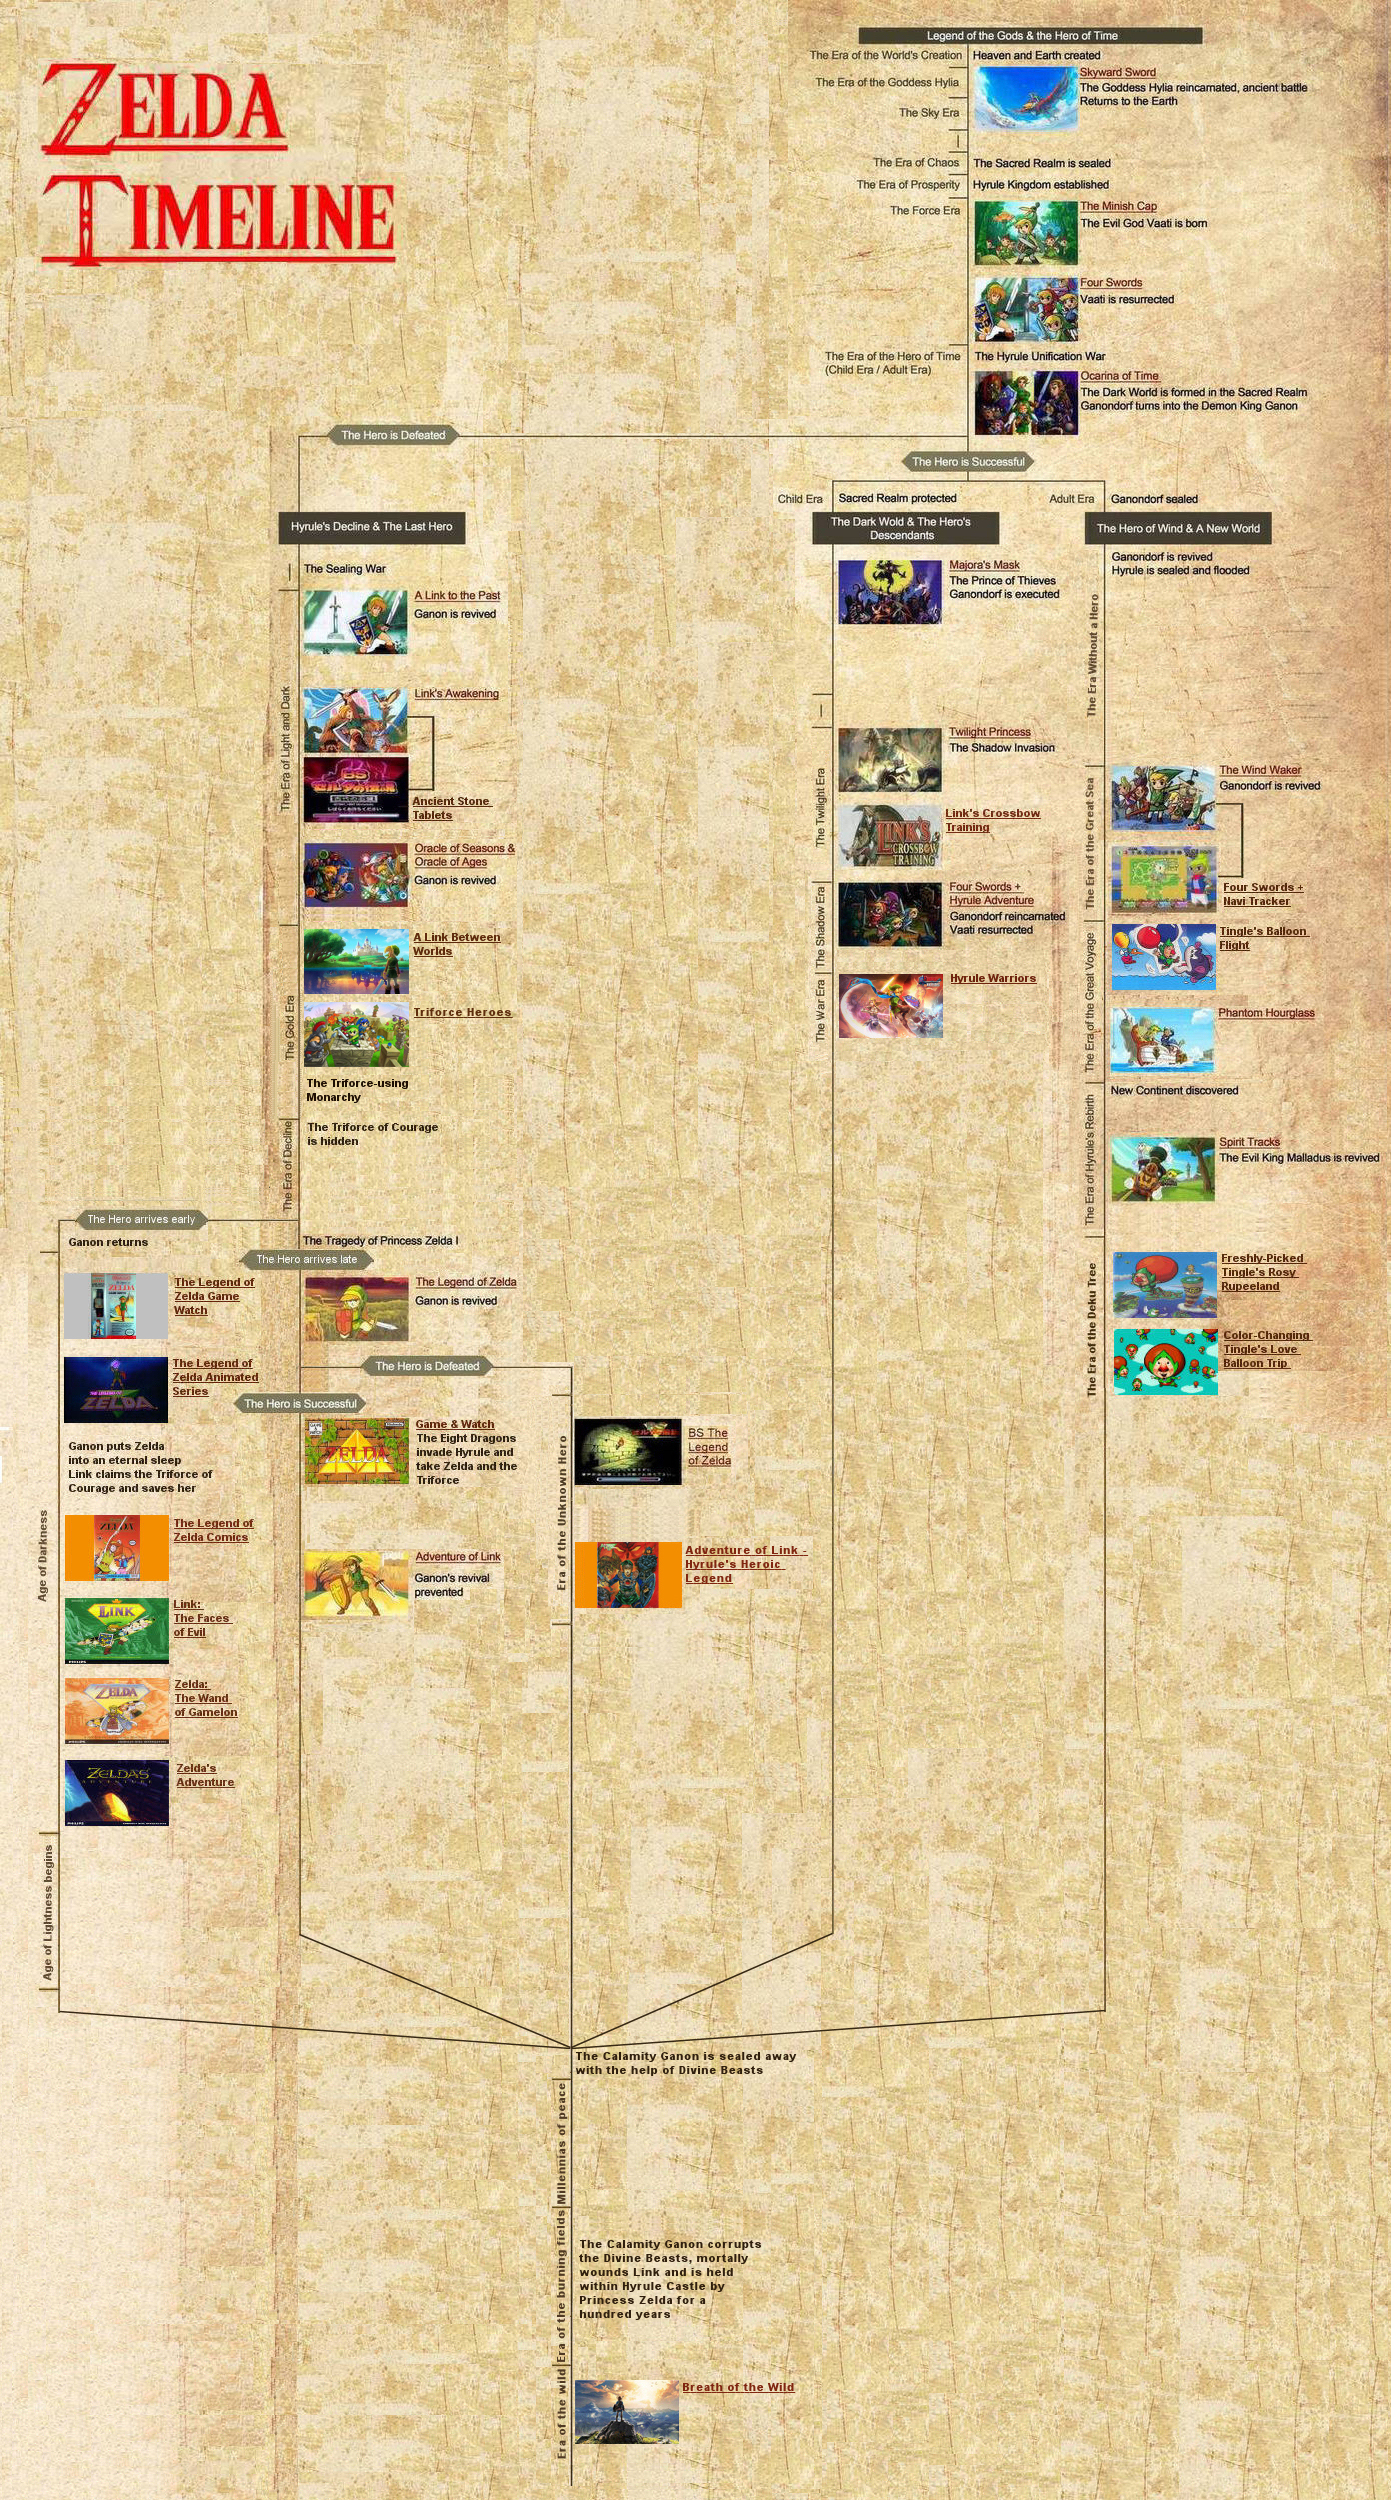 The Legend Of Zelda Games, In Chronological Order